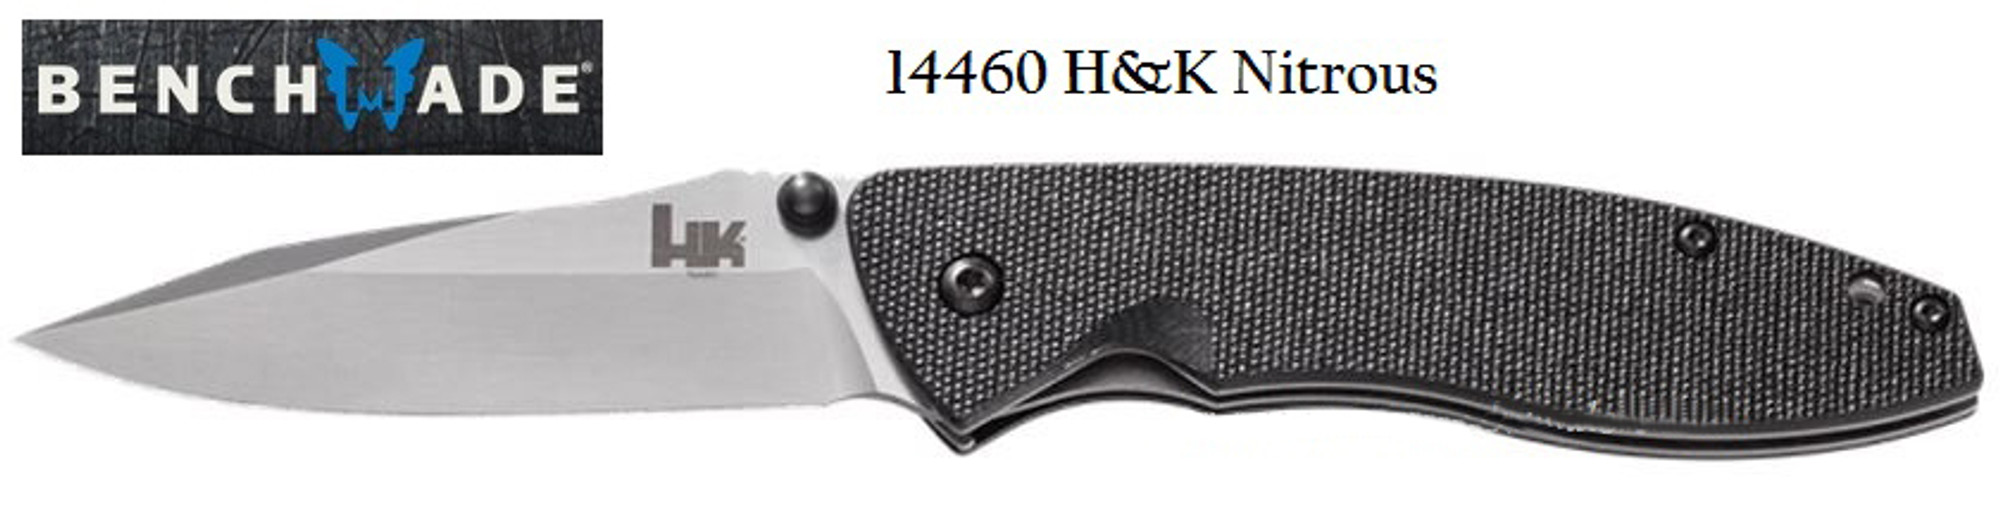 Heckler & Koch 14460 Nitrous Plain Edge